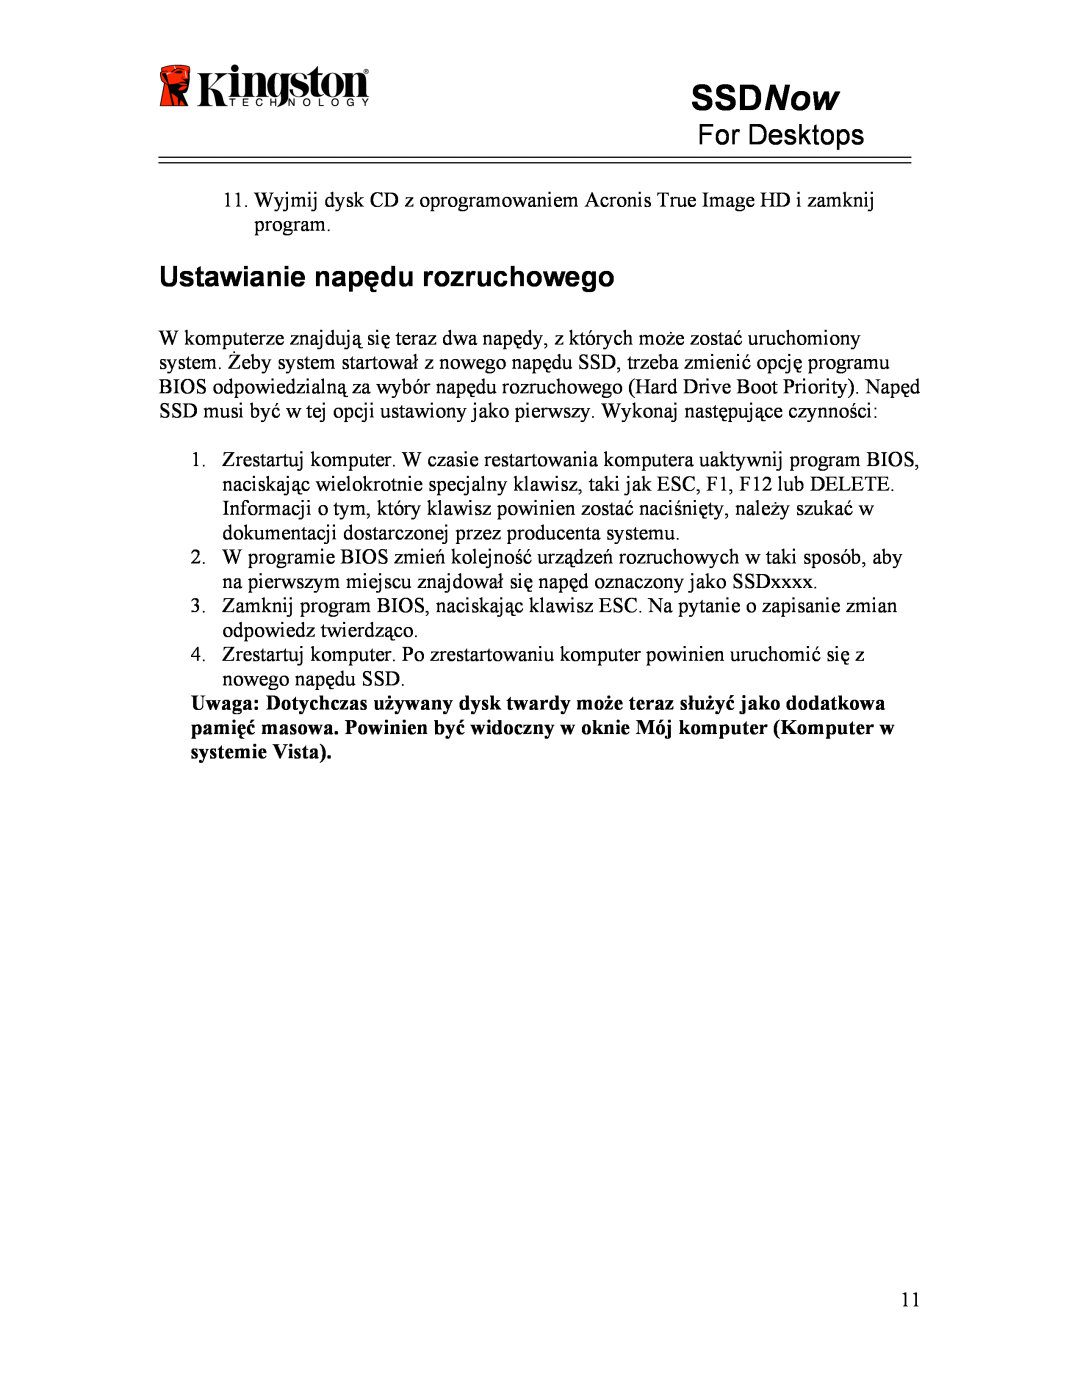 Kingston Technology 07-16-2009 manual Ustawianie napędu rozruchowego, SSDNow, For Desktops 